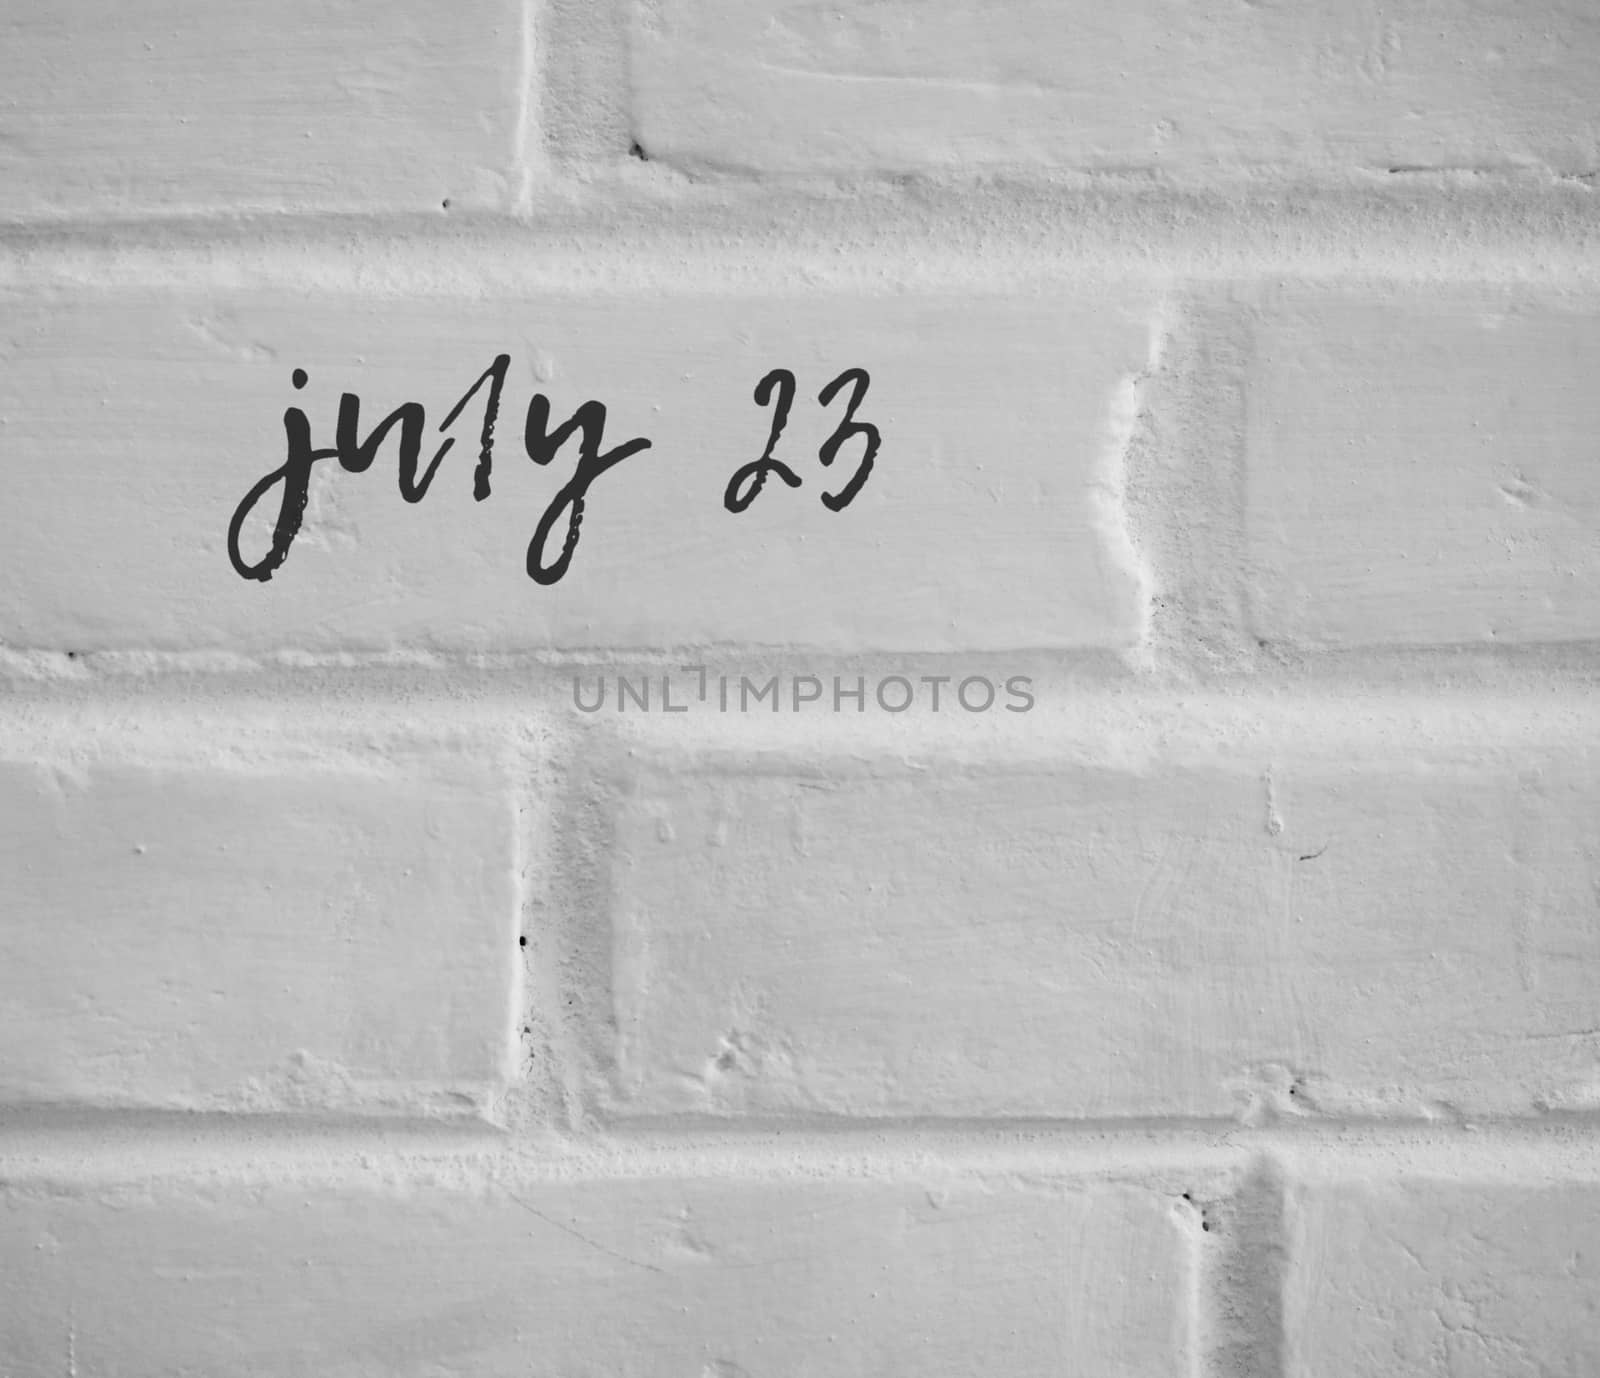 PHOTO OF july 23 WRITTEN ON WHITE PLAIN BRICK WALL